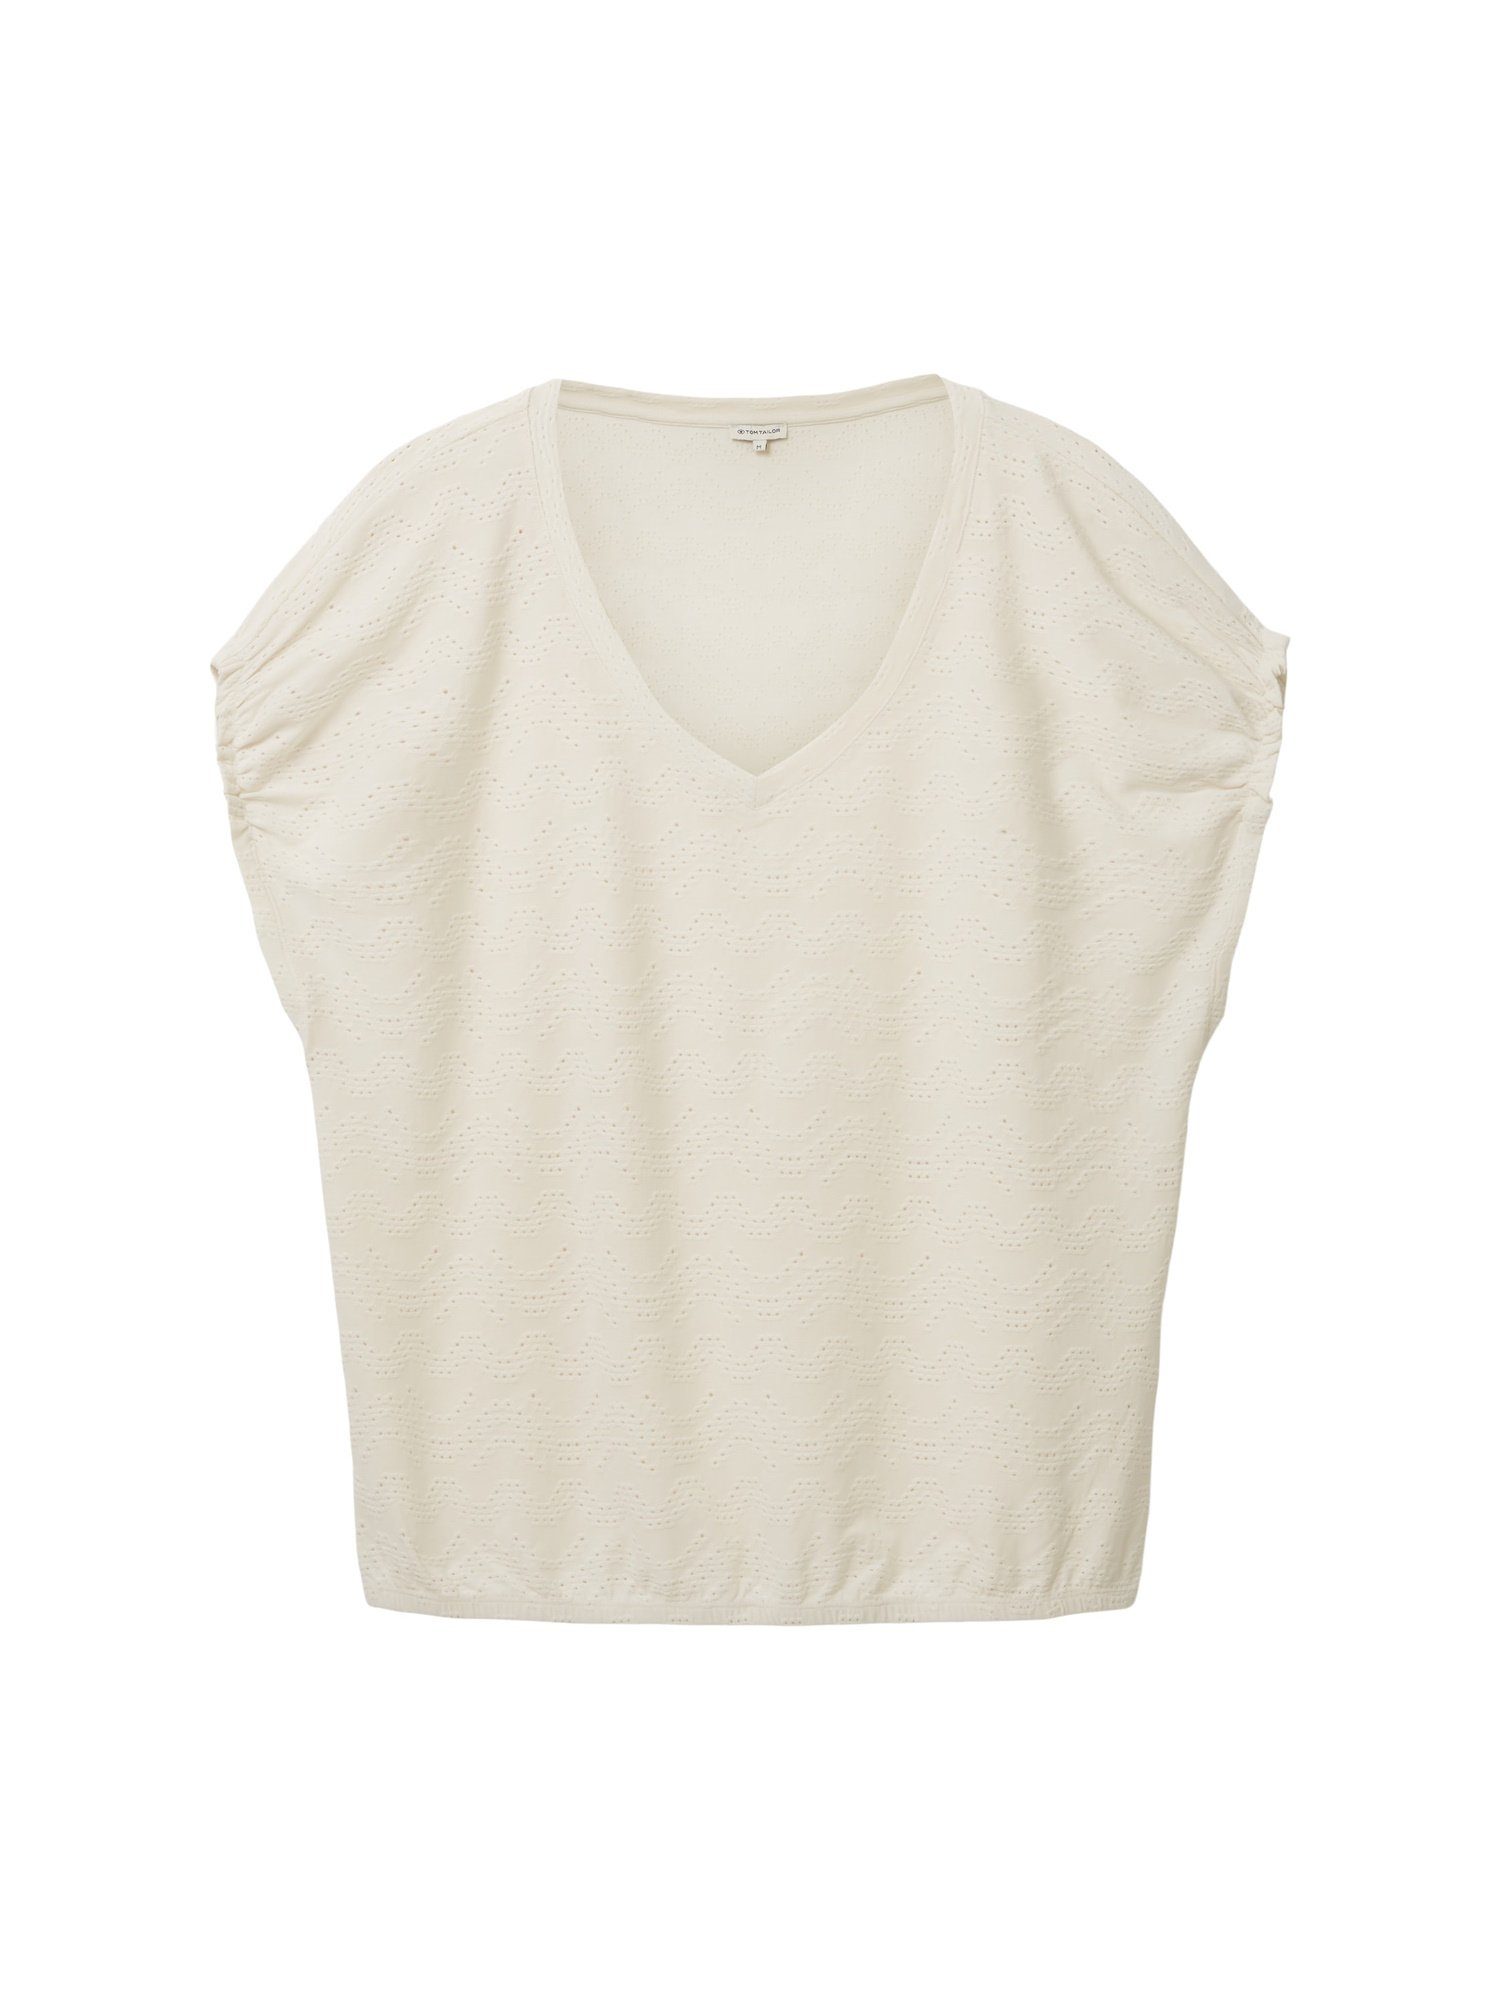 OTTO online Tailor | Tom T-Shirts Damen Weiße kaufen